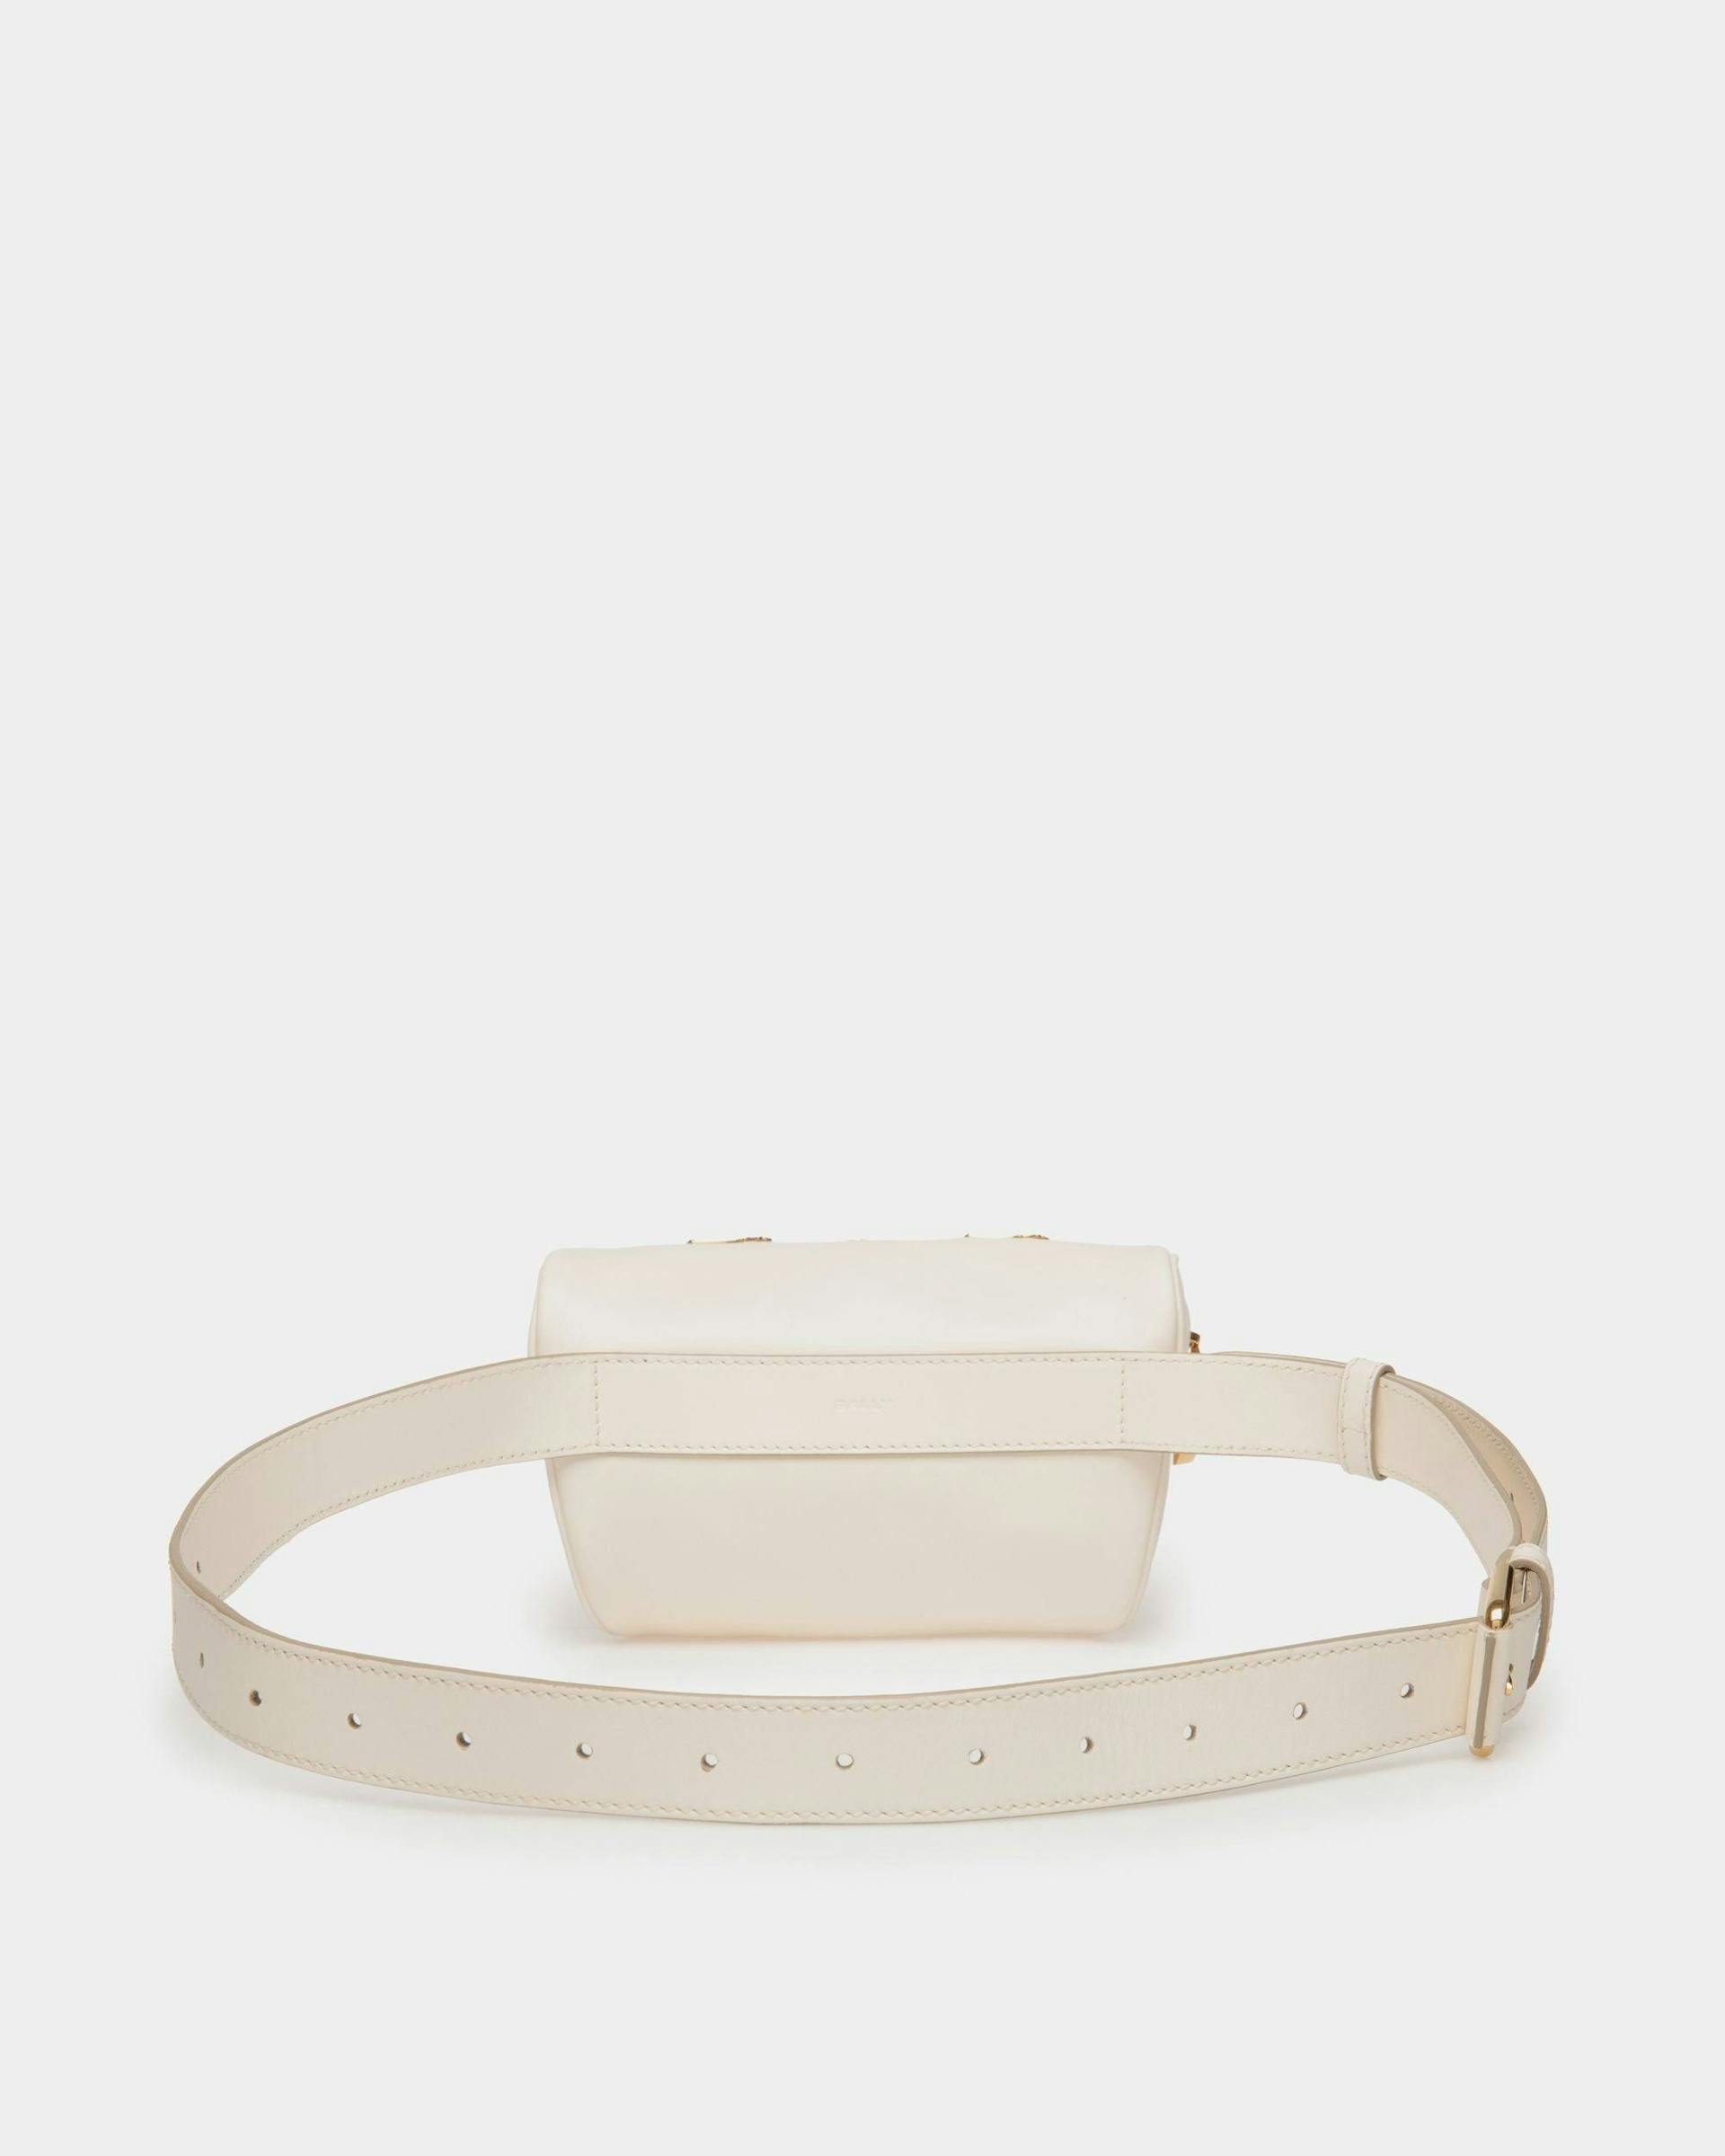 Women's Moutain Belt Bag  in White Leather | Bally | Still Life Back